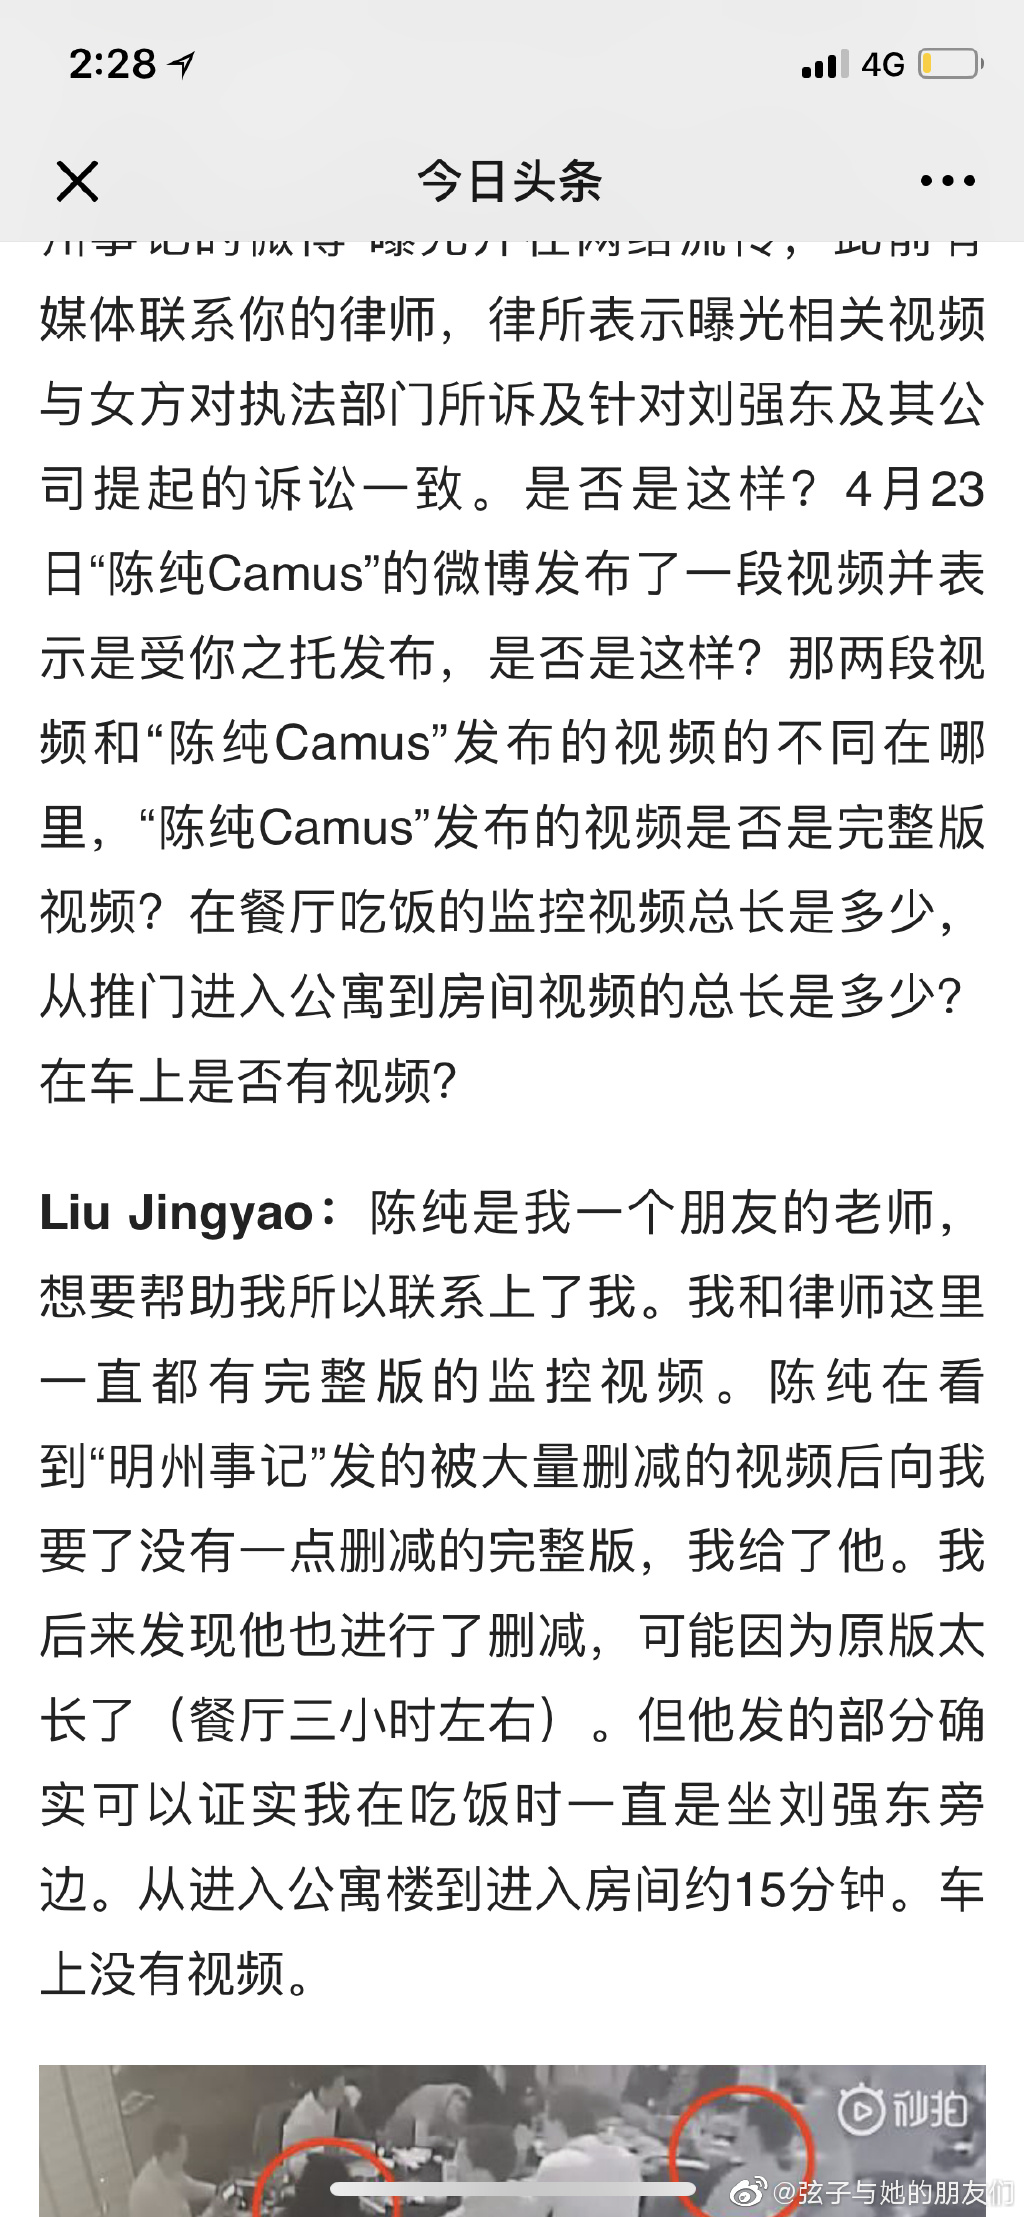 财经网对Jingyao的采访也刊登出了，采访透露几个信息